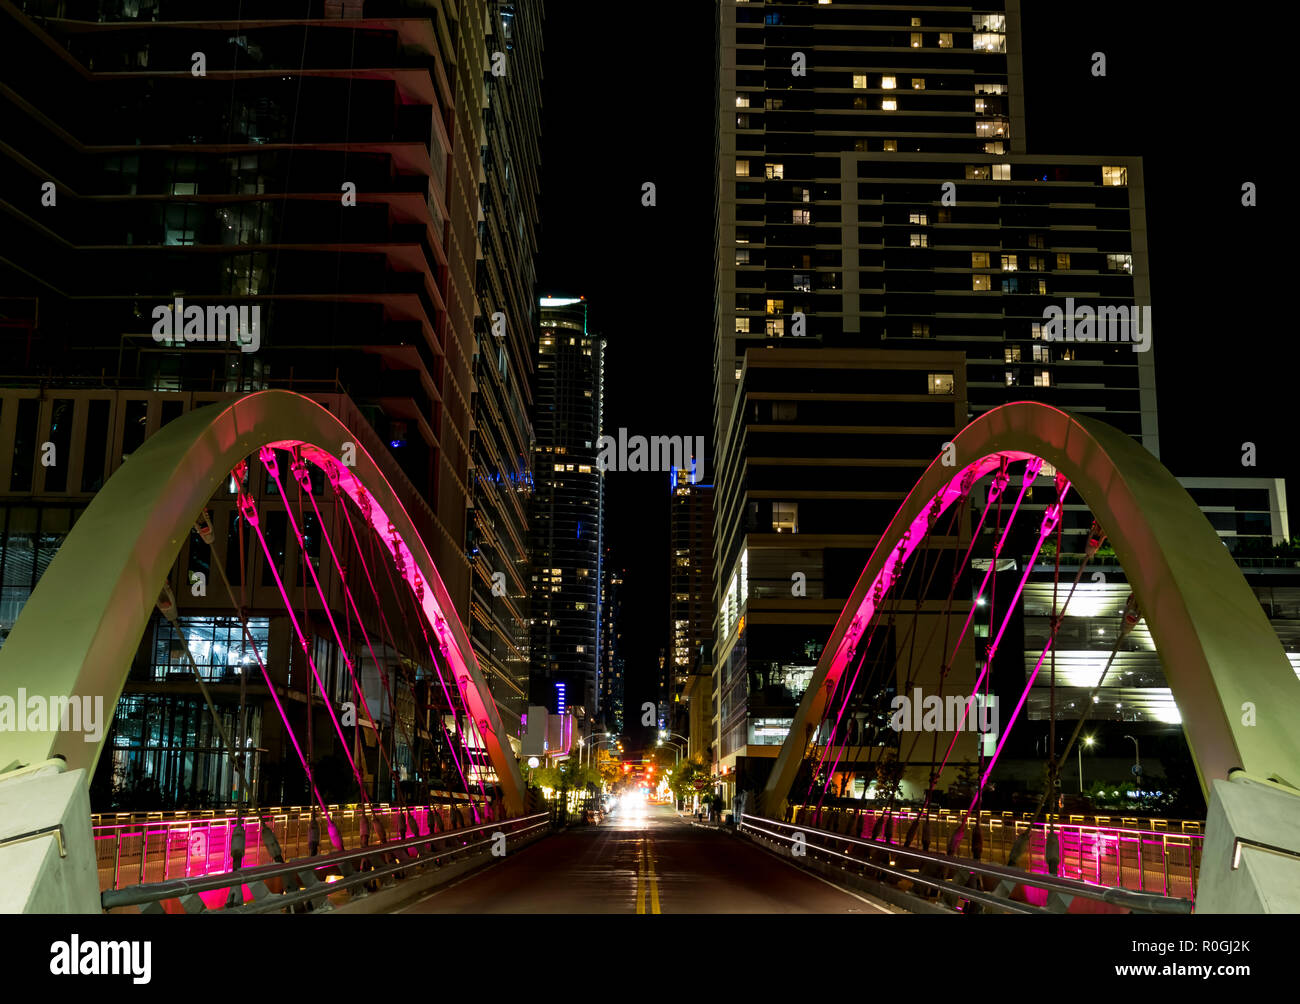 Eine neue Suspension Bridge spanning Shoal Creek auf der 2. Straße der Innenstadt von Austin, Texas blinkt Mehrere helle Farben in der Nacht. Stockfoto